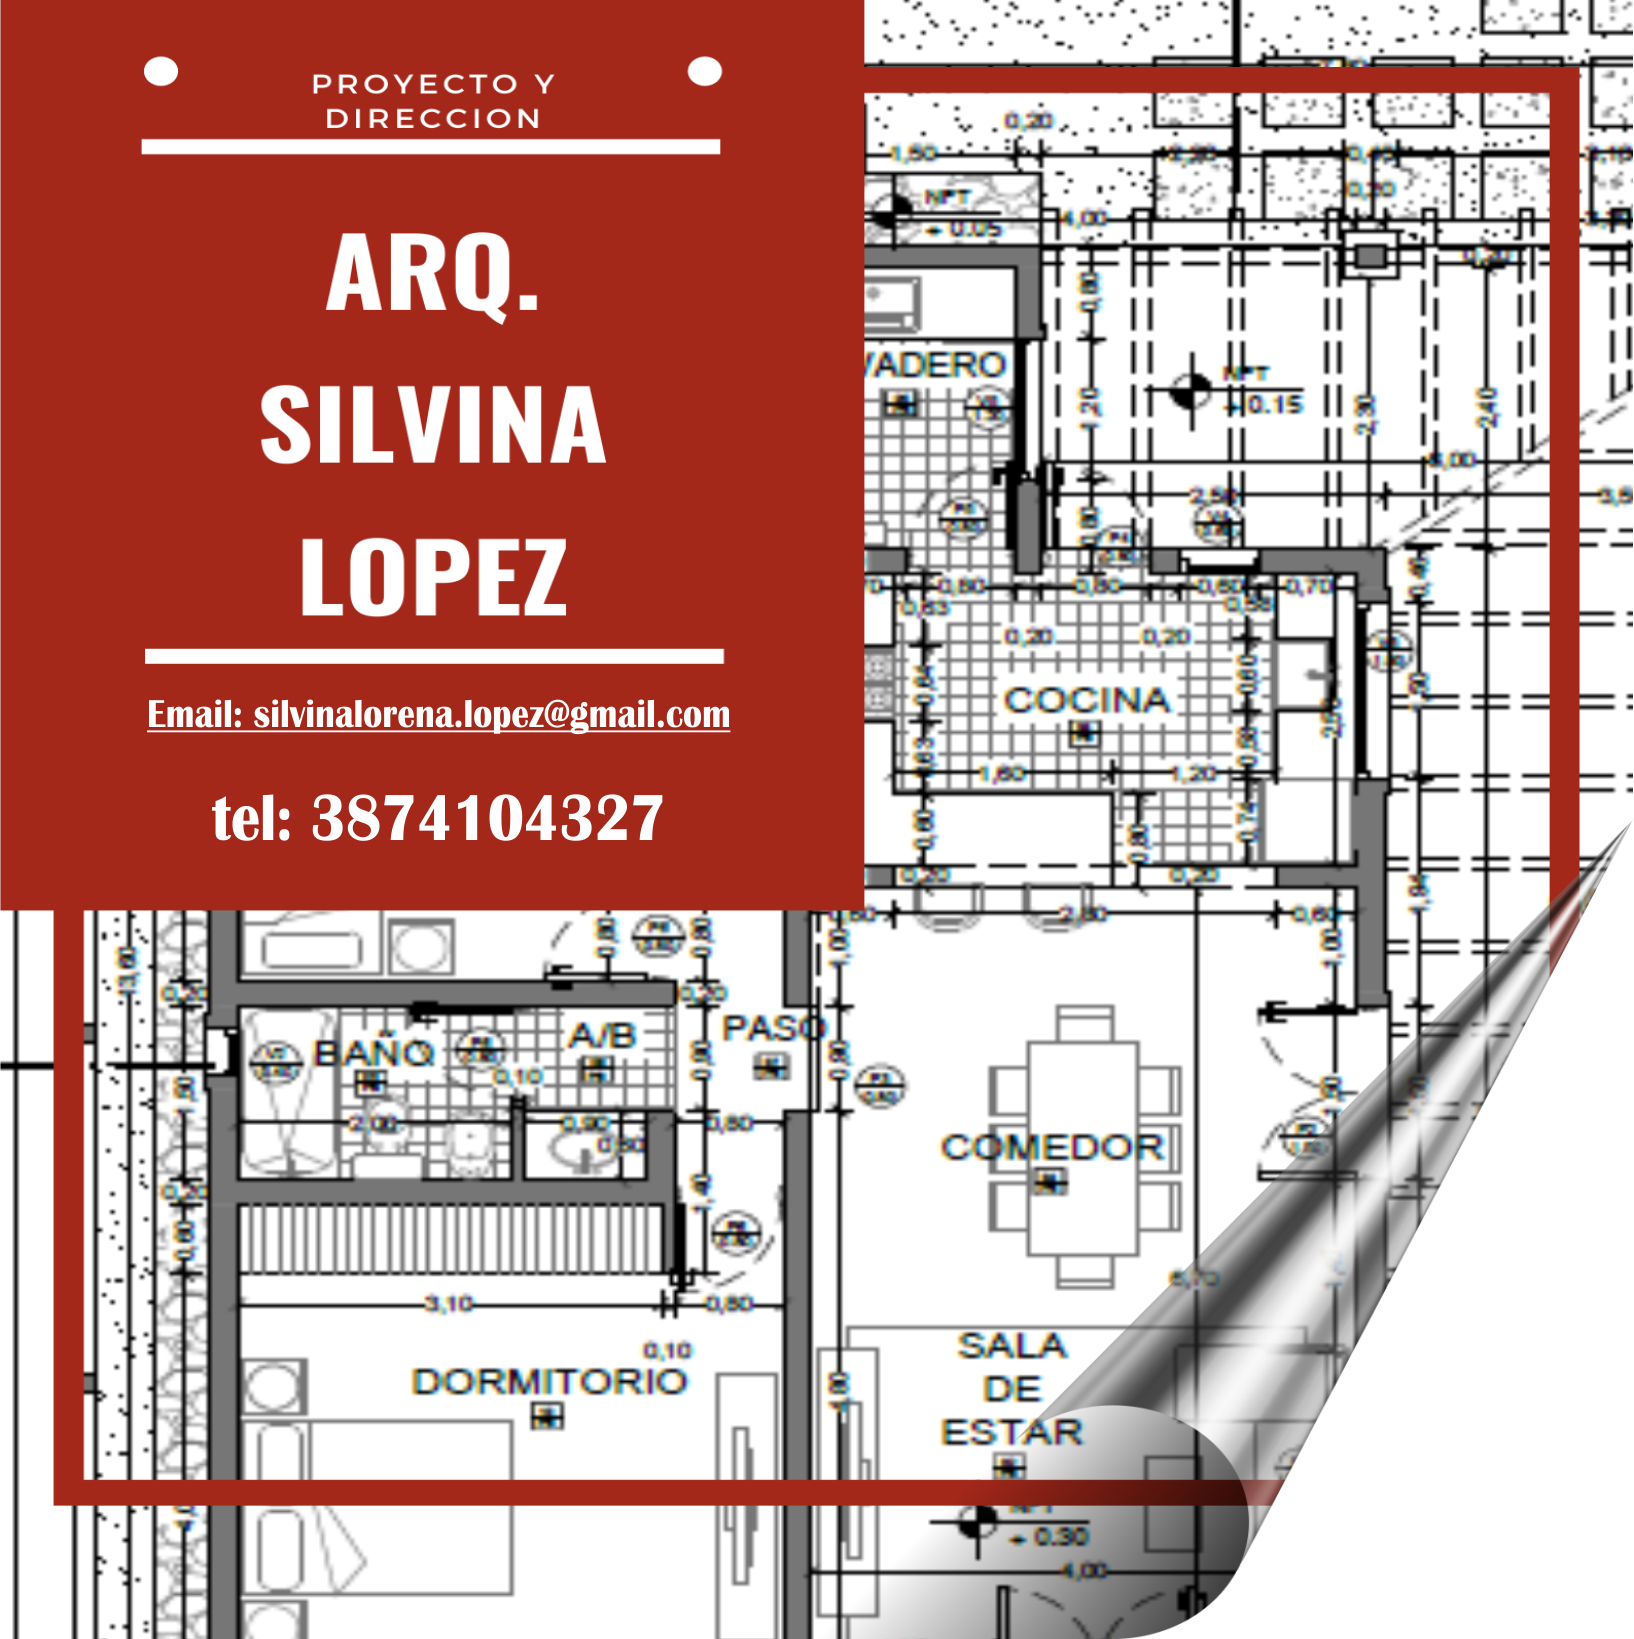 Arquitecta Silvina López